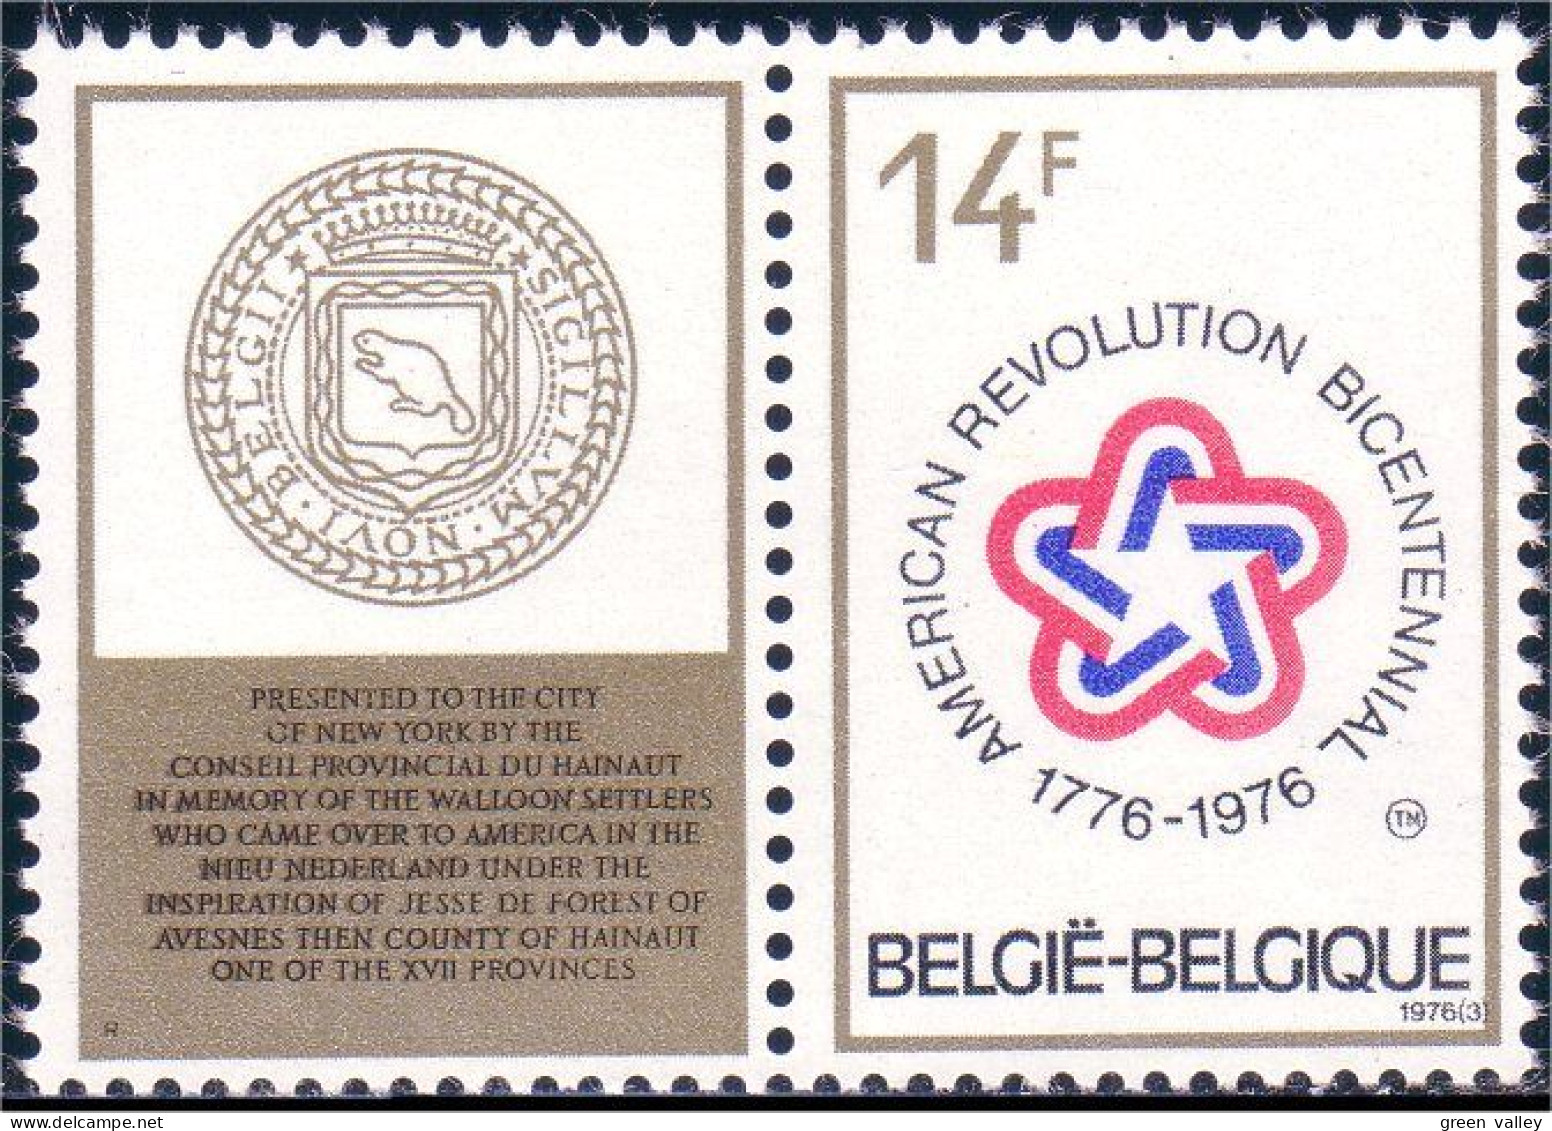 198 Belgium Wallons Walloon Immigrants American Bicentennial MNH ** Neuf SC (BEL-362b) - Indépendance USA